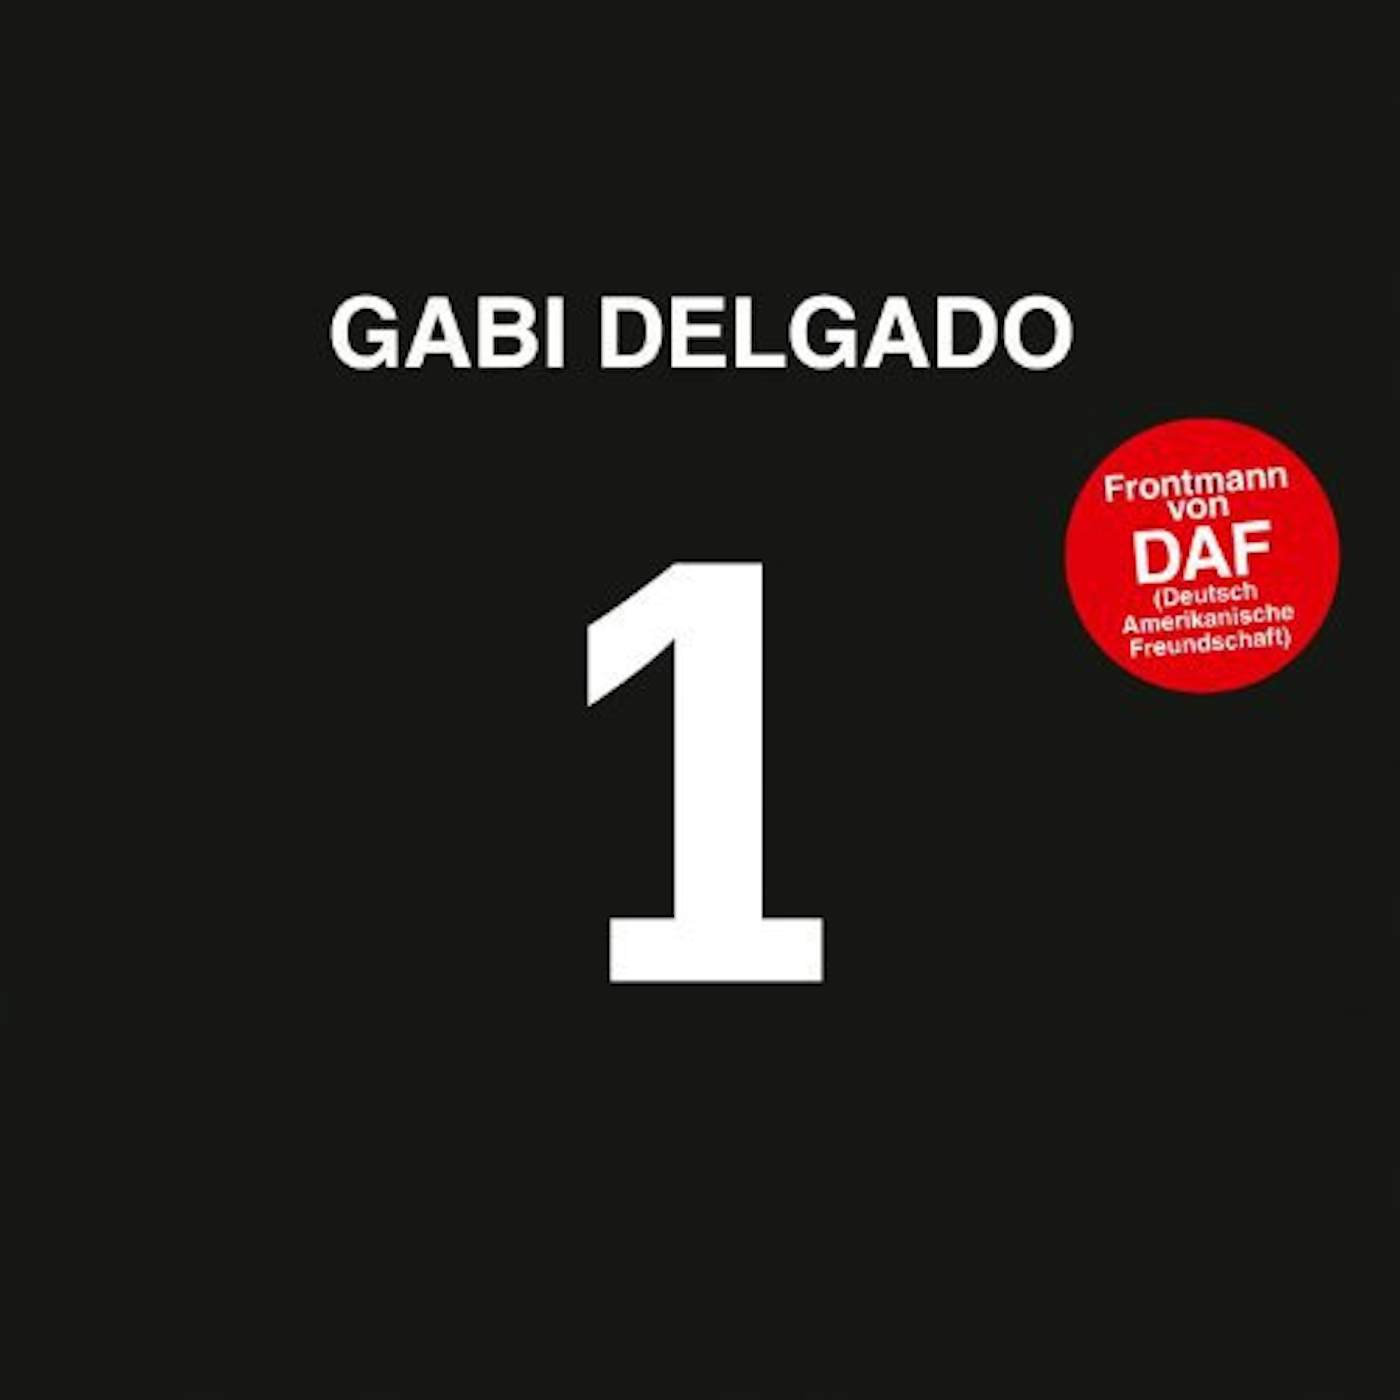 Gabi Delgado 1 Vinyl Record